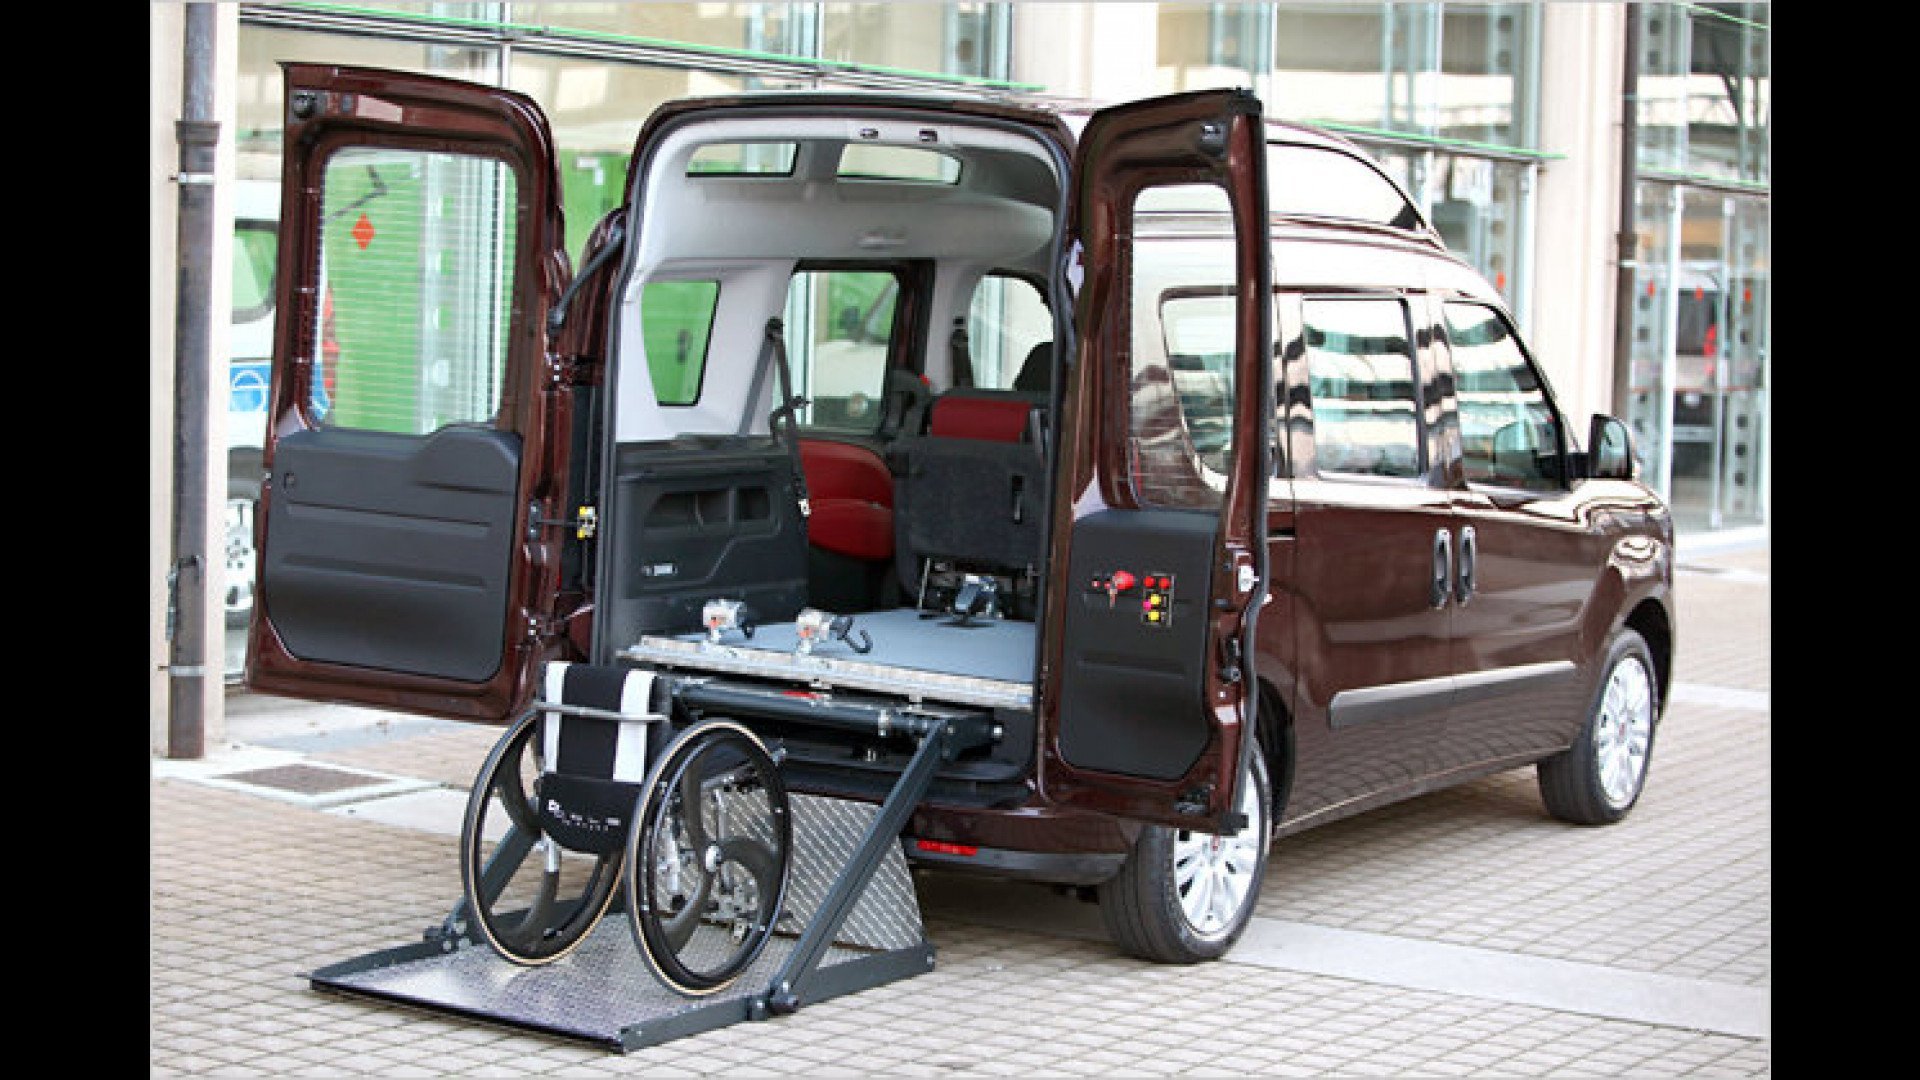 Инвалиды покупка авто. Fiat Doblo для перевозки инвалидов. Фиат Добло для инвалидов. Микроавтобус Fiat Doblo. Минивэн Фиат Добло.